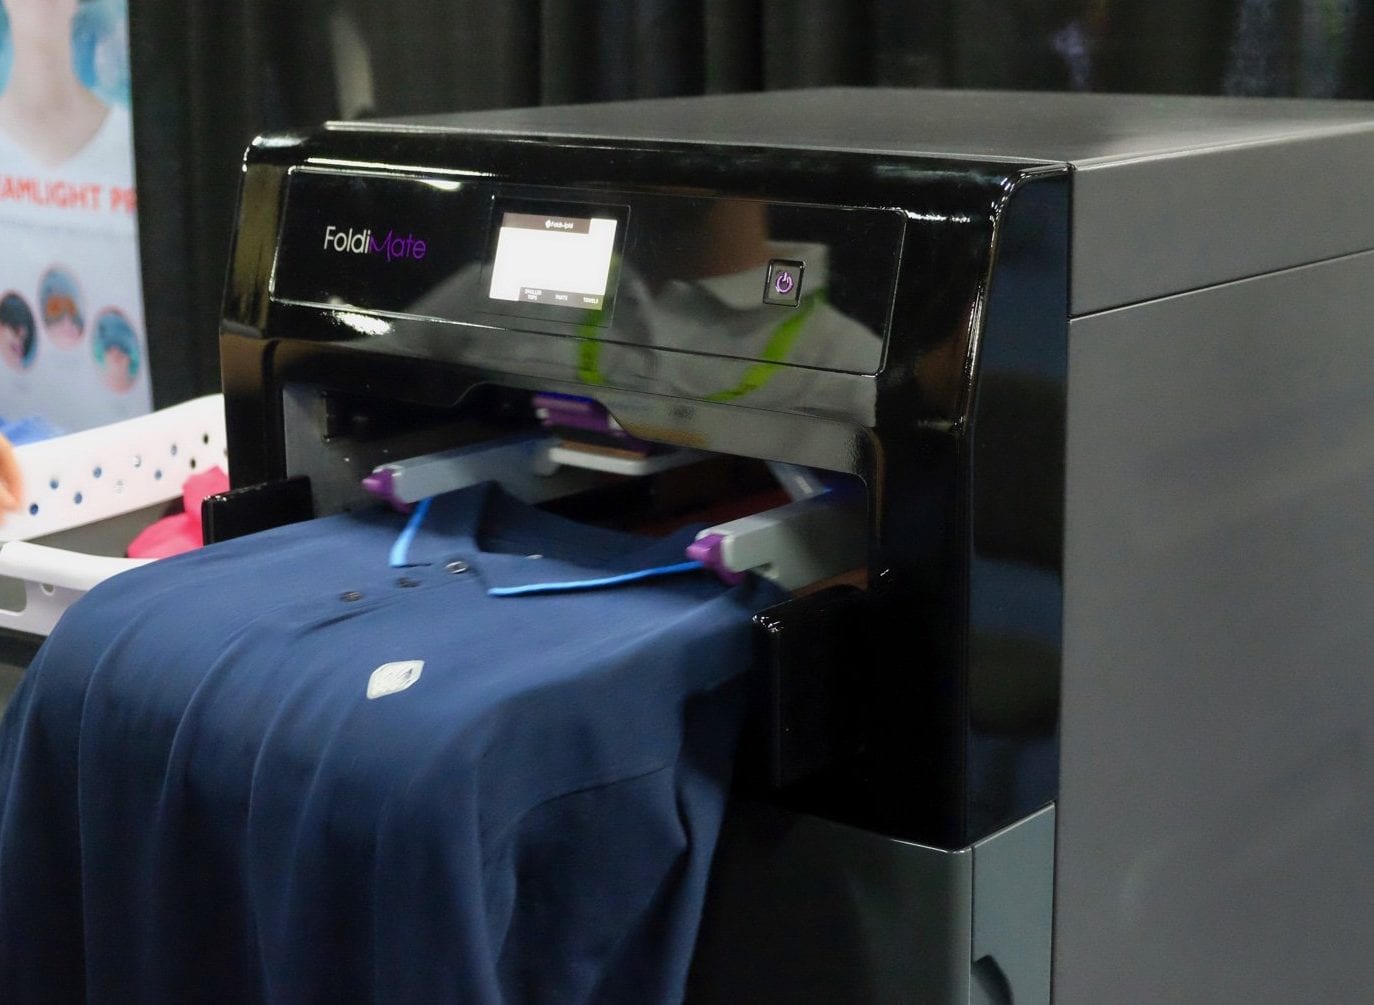 Foldimate -laundry-folding robot